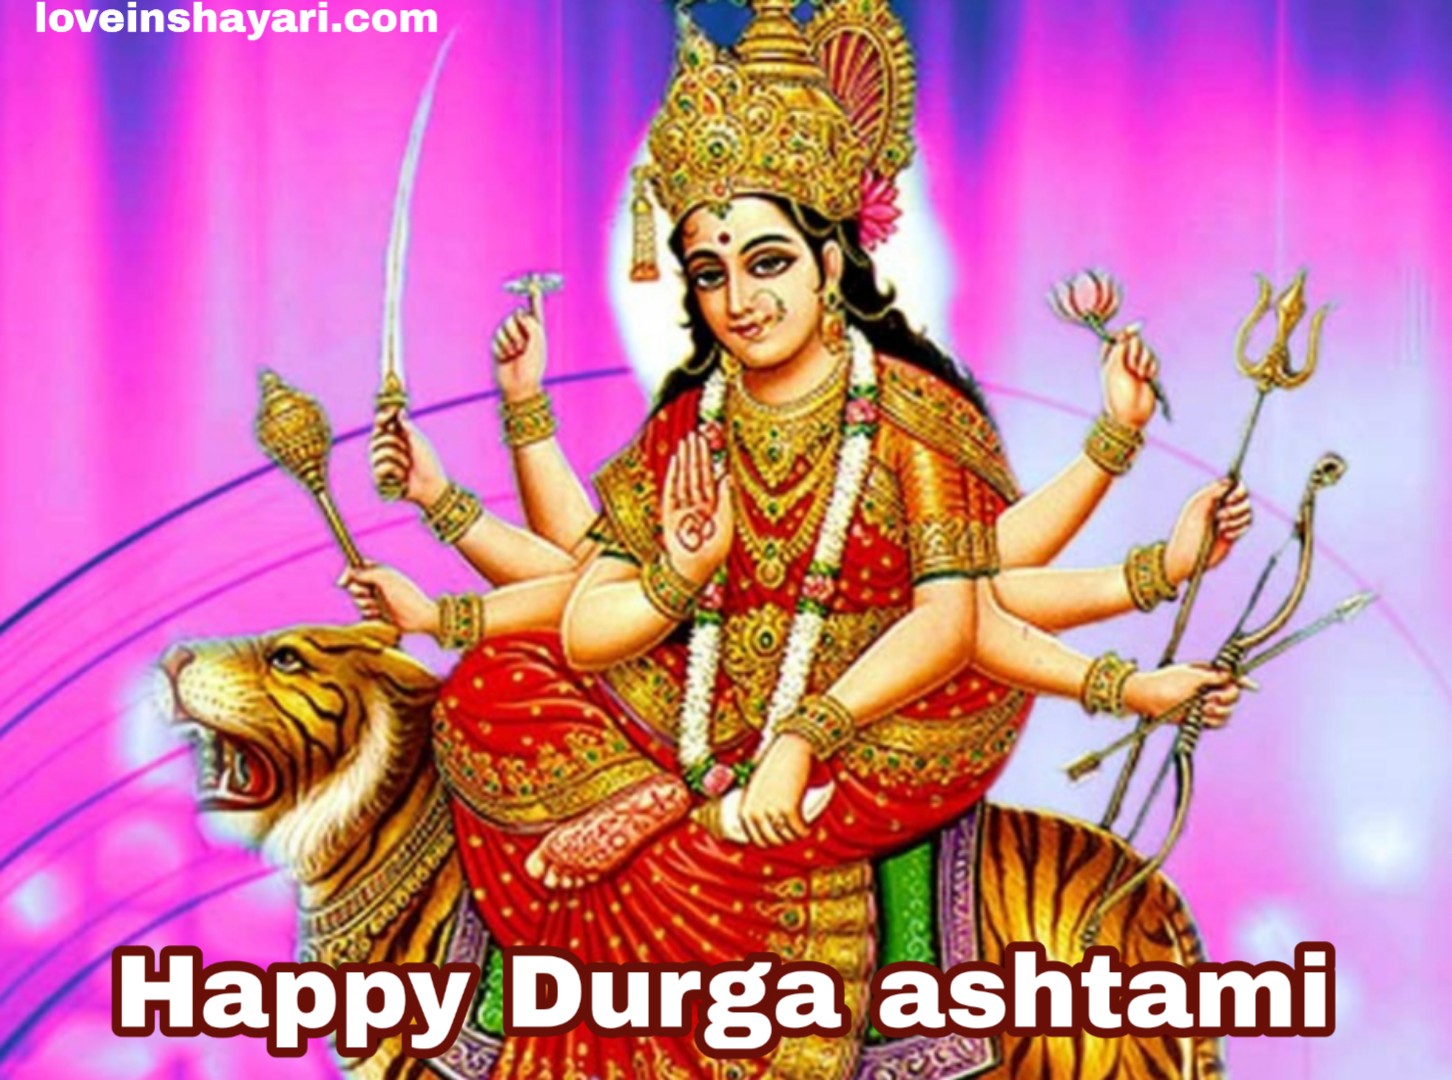 Durga ashtami images